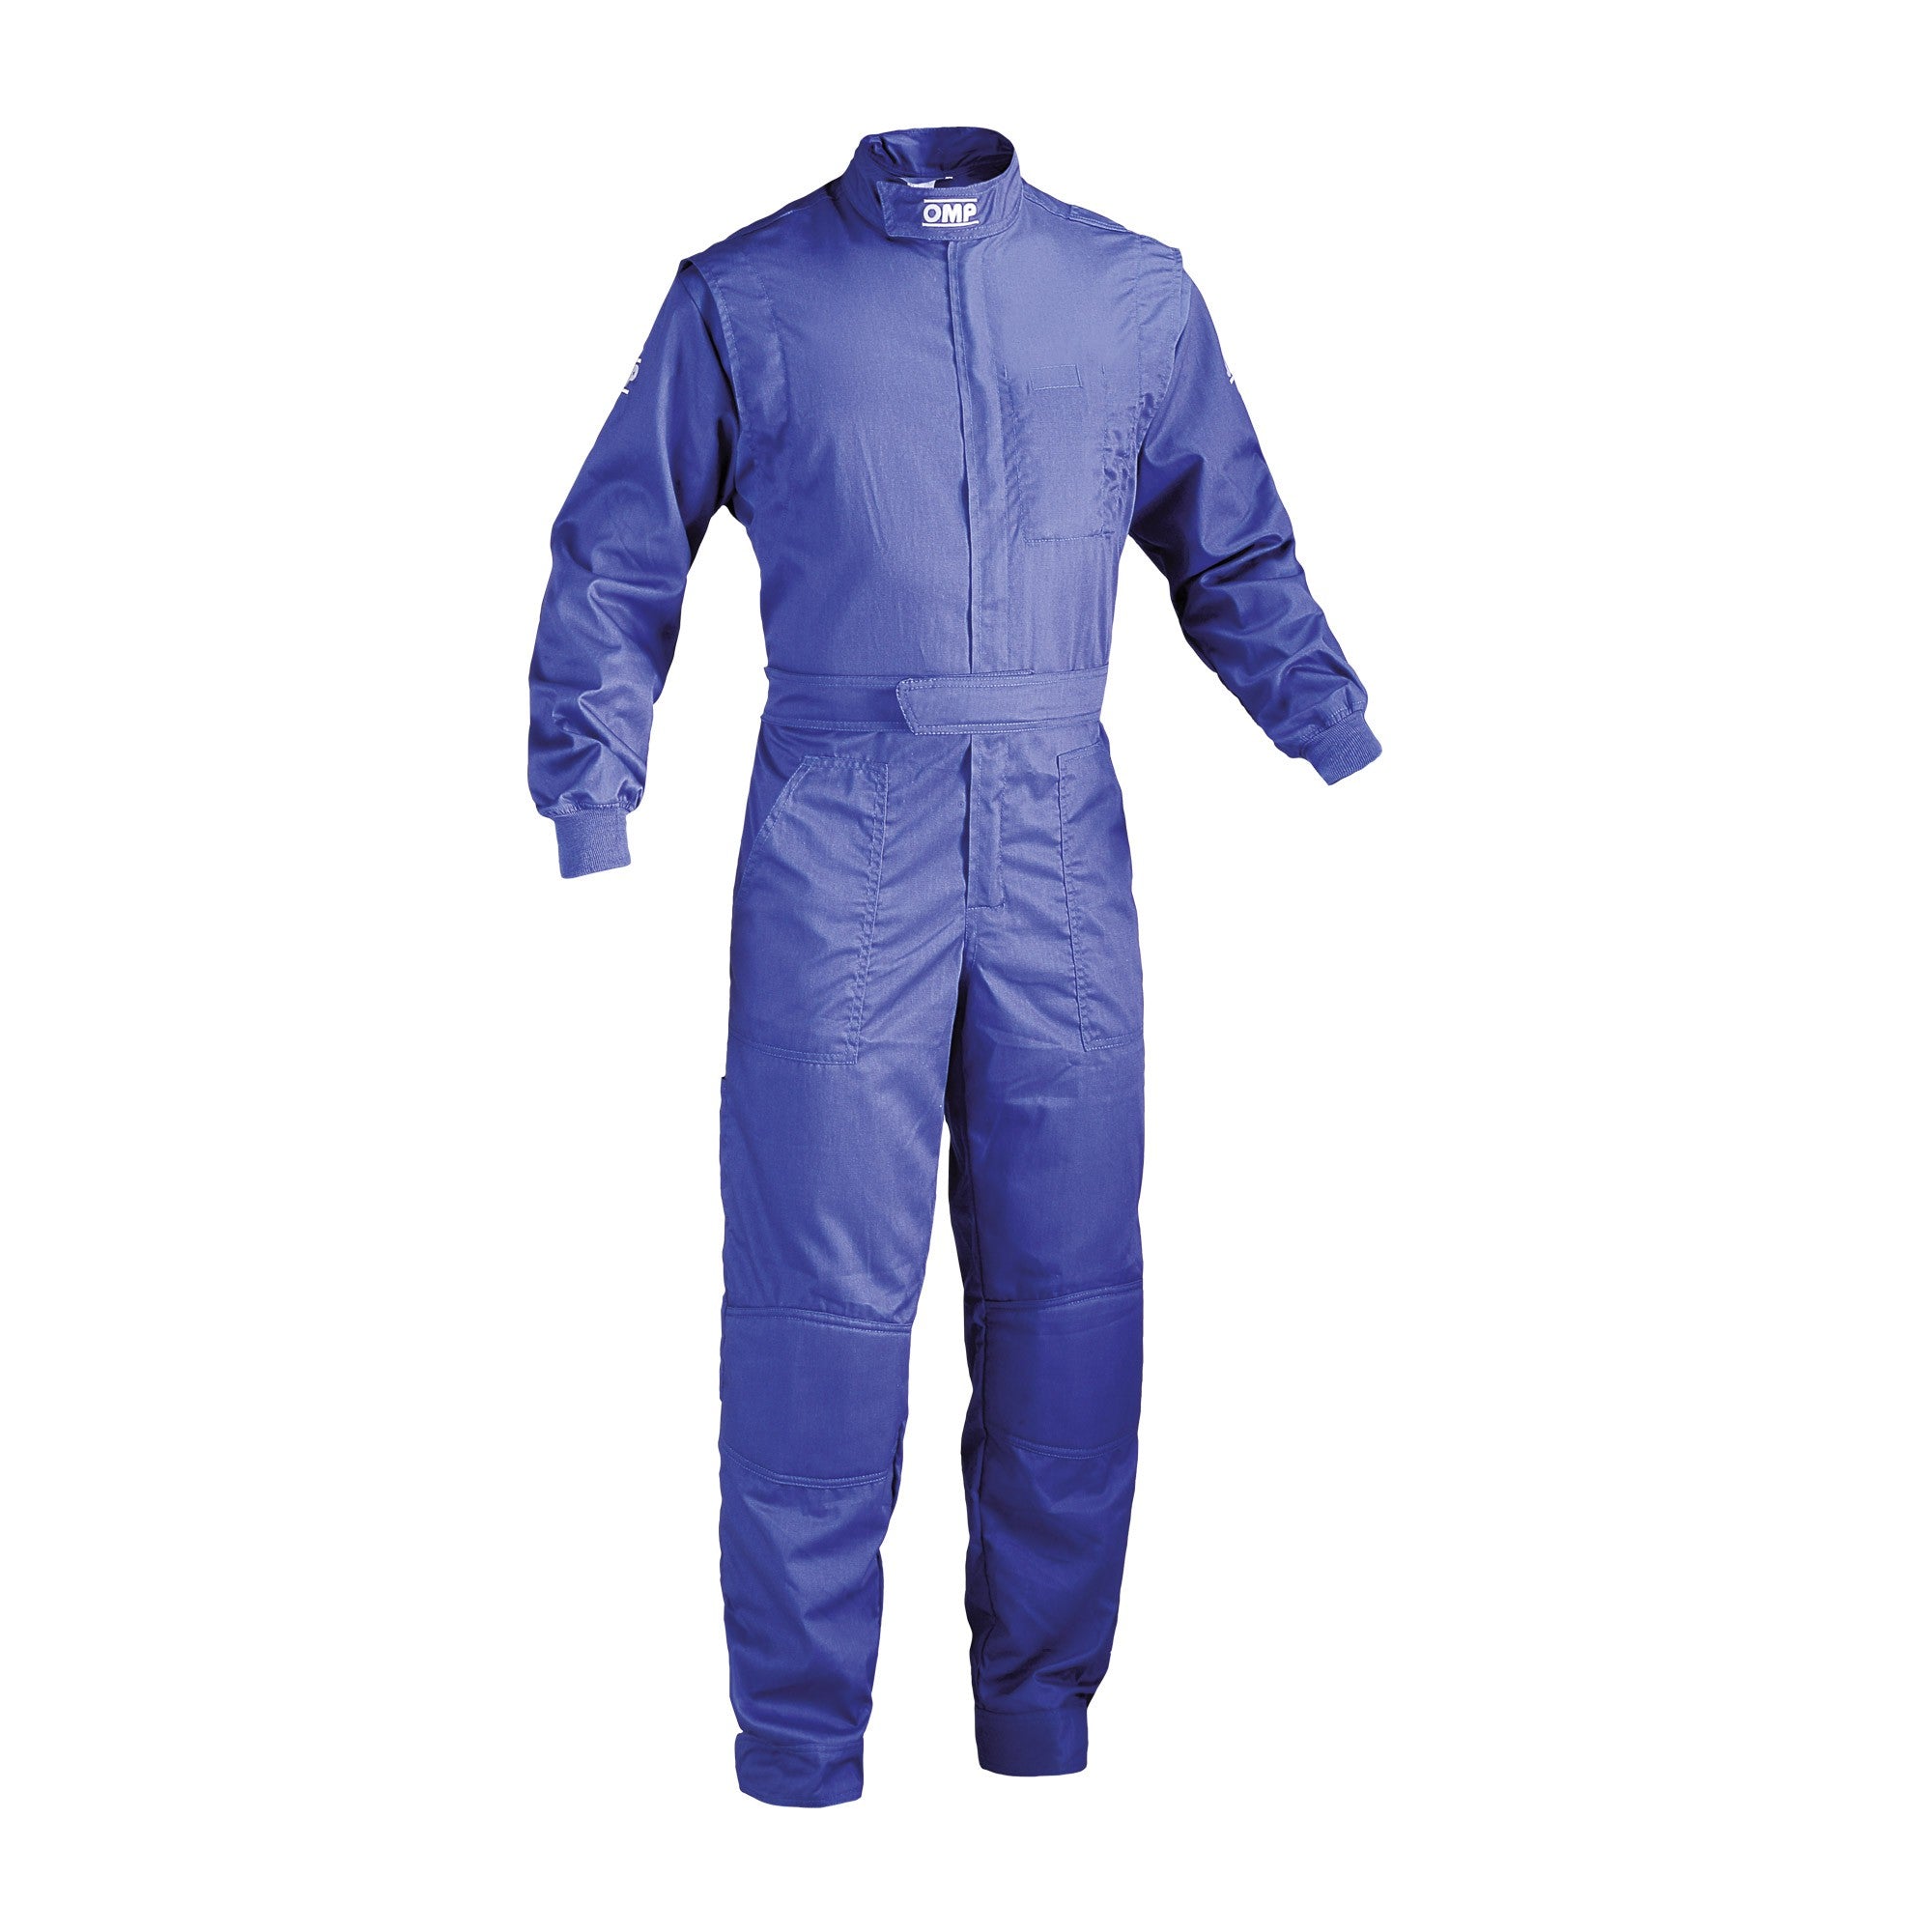 OMP NB0-1579-A01-041-48 (NB157904148) Mechanic suit SUMMER, blue, size 48 Photo-0 